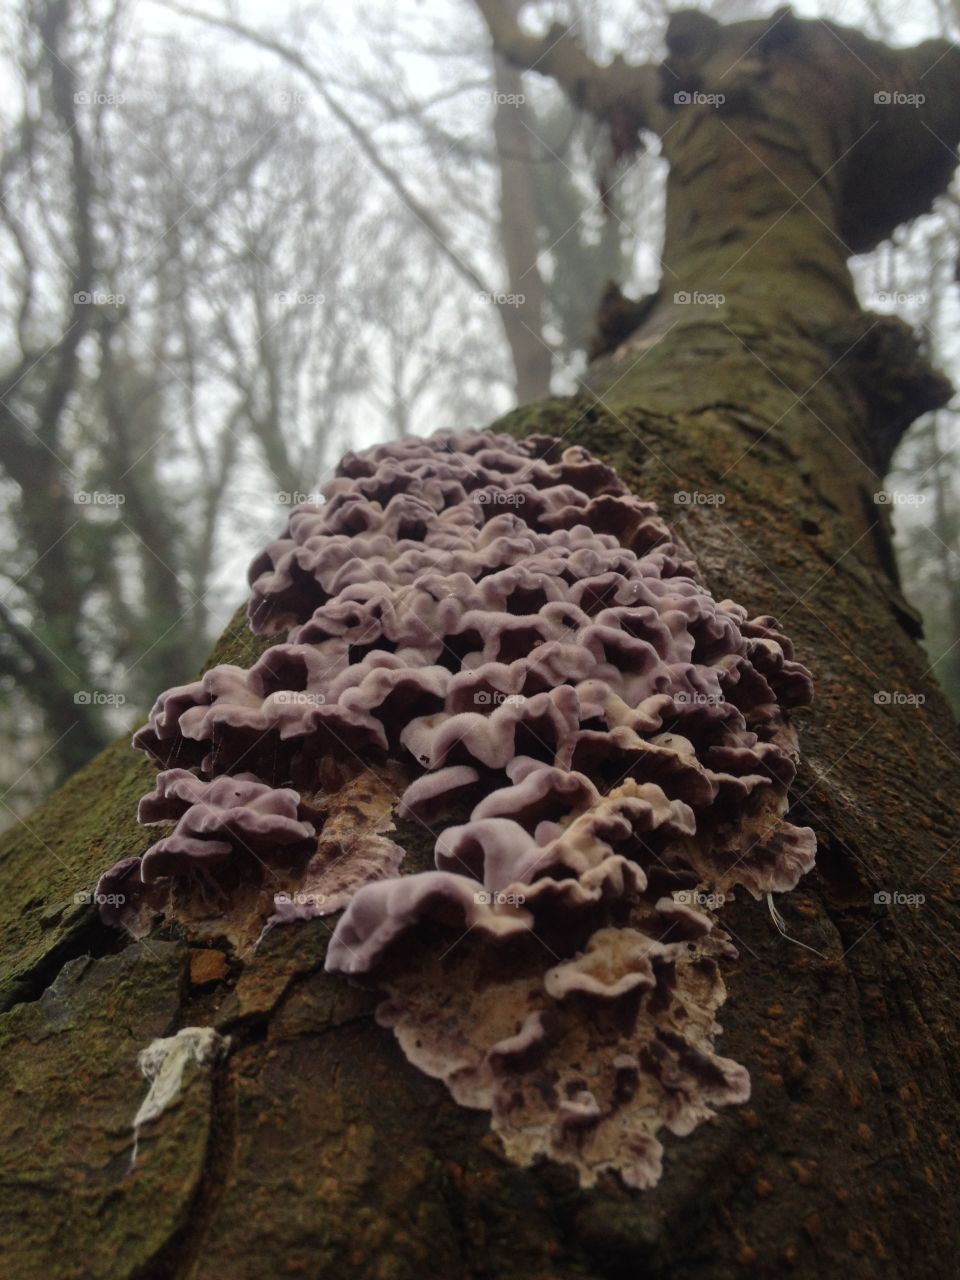 Interesting looking fungus 